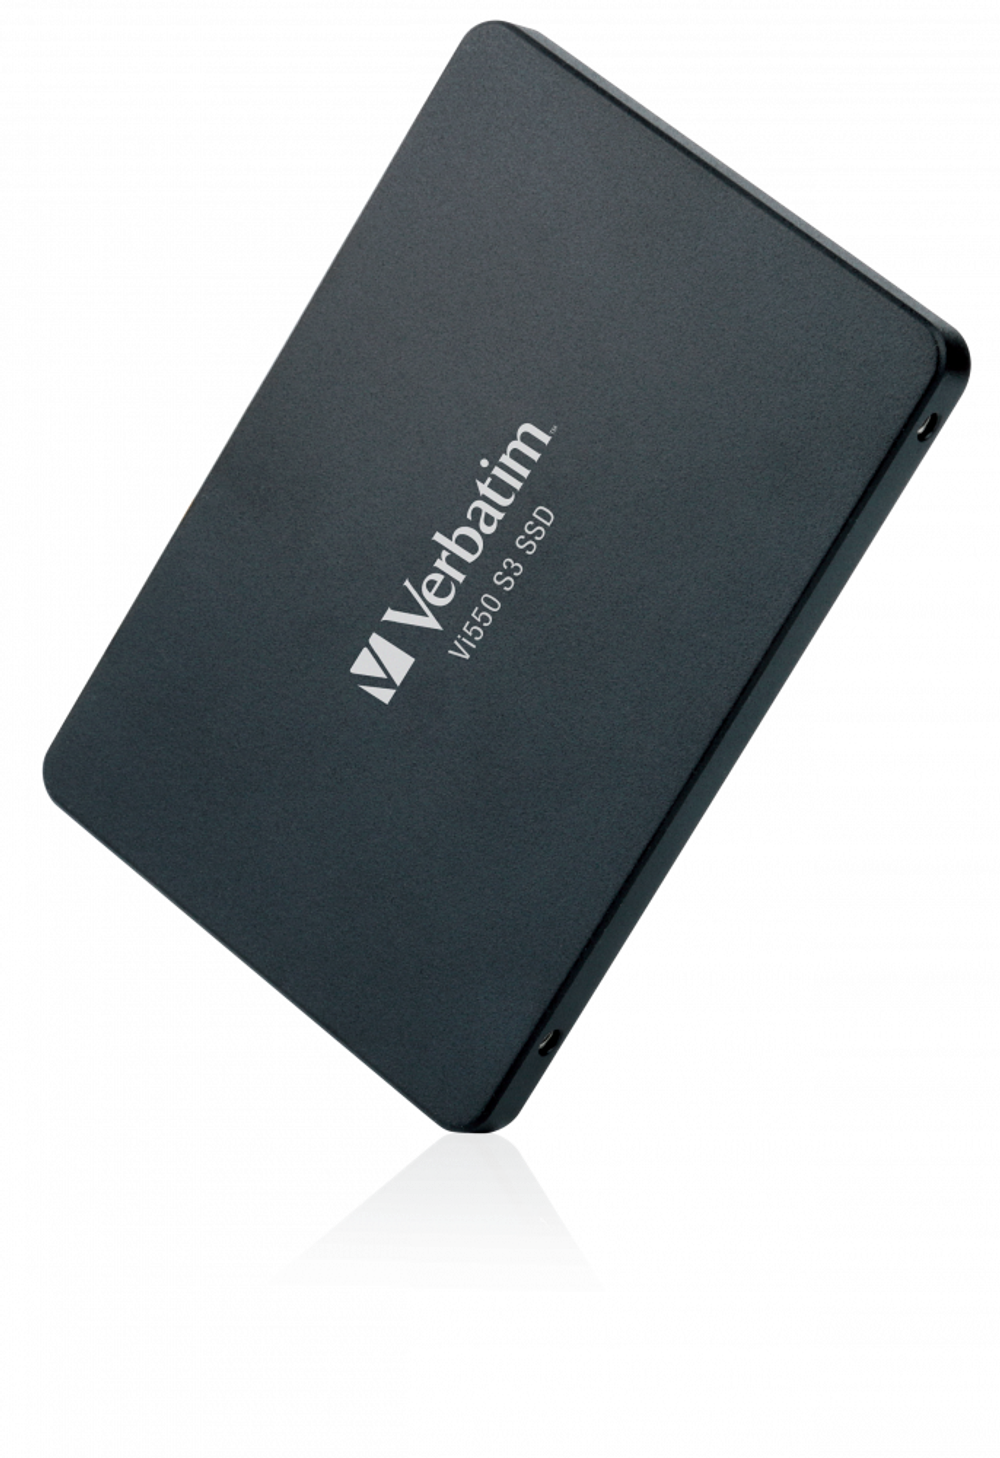 Внутренний накопитель Verbatim Vi550 S3 SSD 256GB 2,5'' SATA III